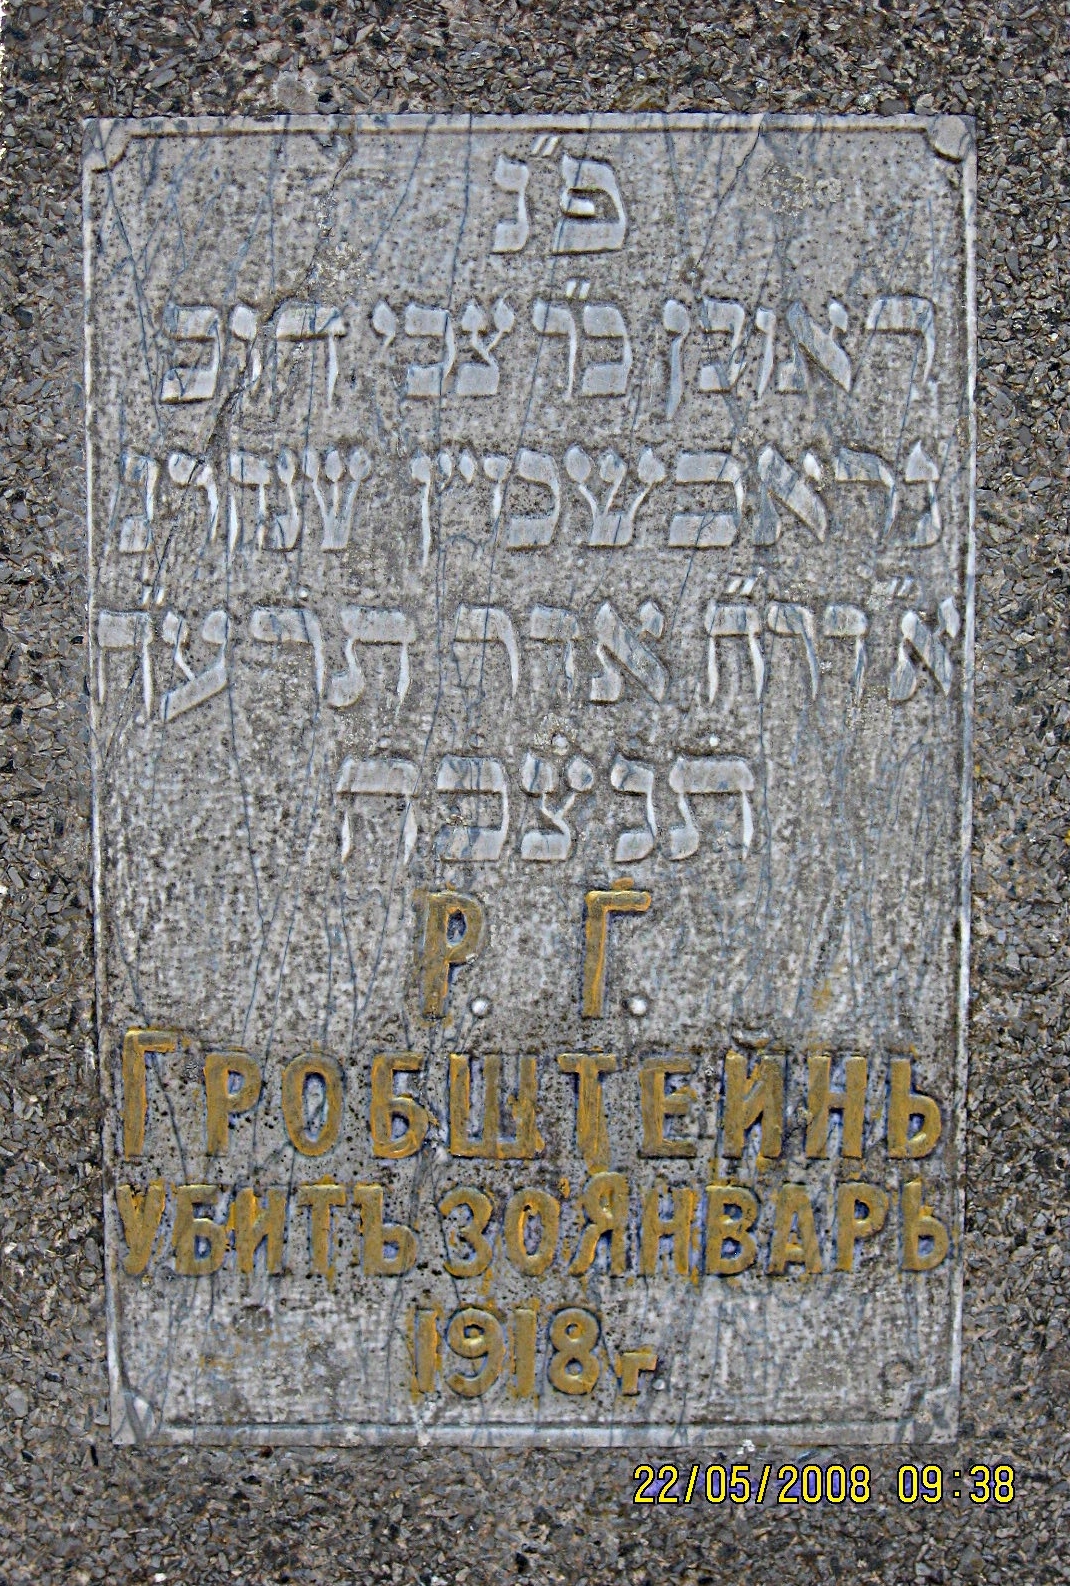 Reuven Grobshtein's gravestone in Baky